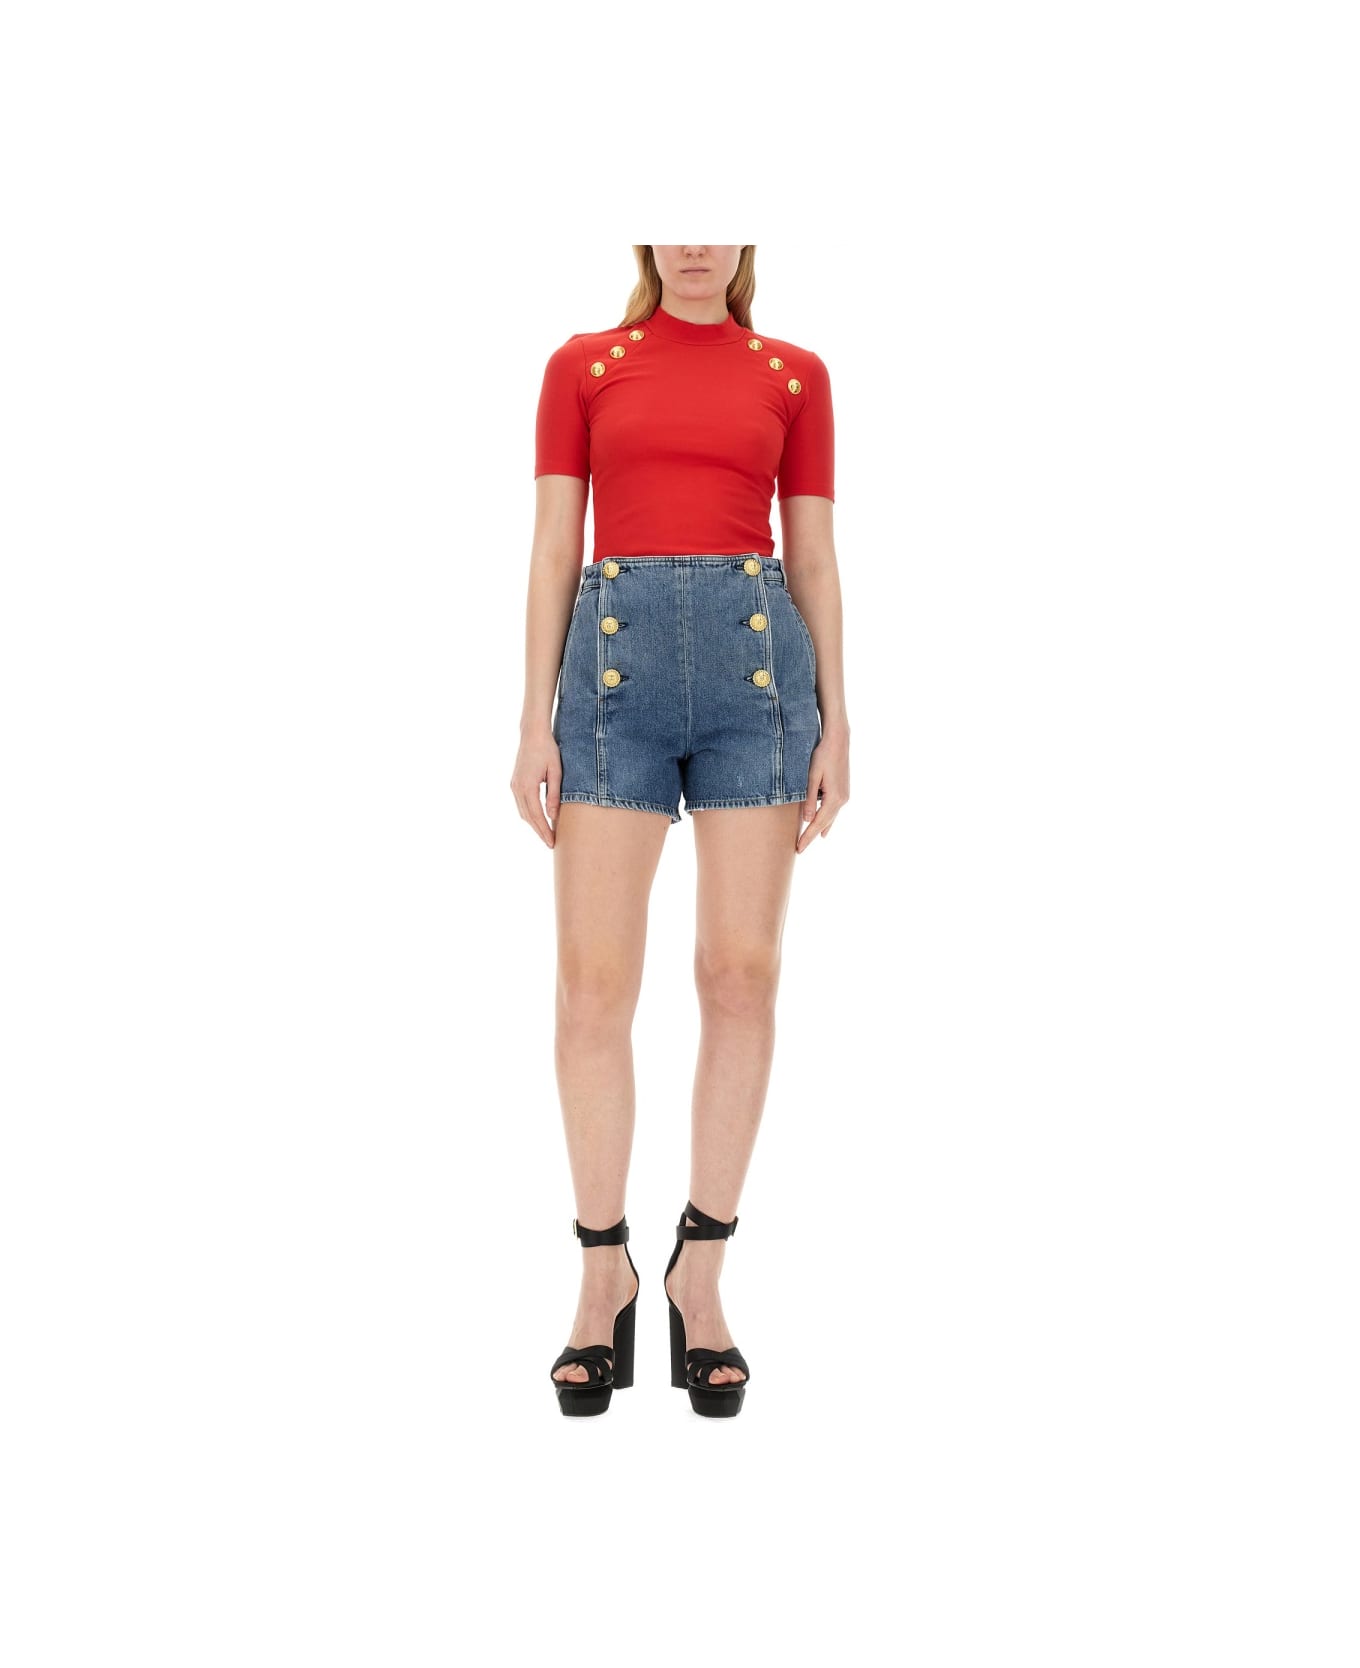 Balmain Slim Fit T-shirt - RED ニットウェア